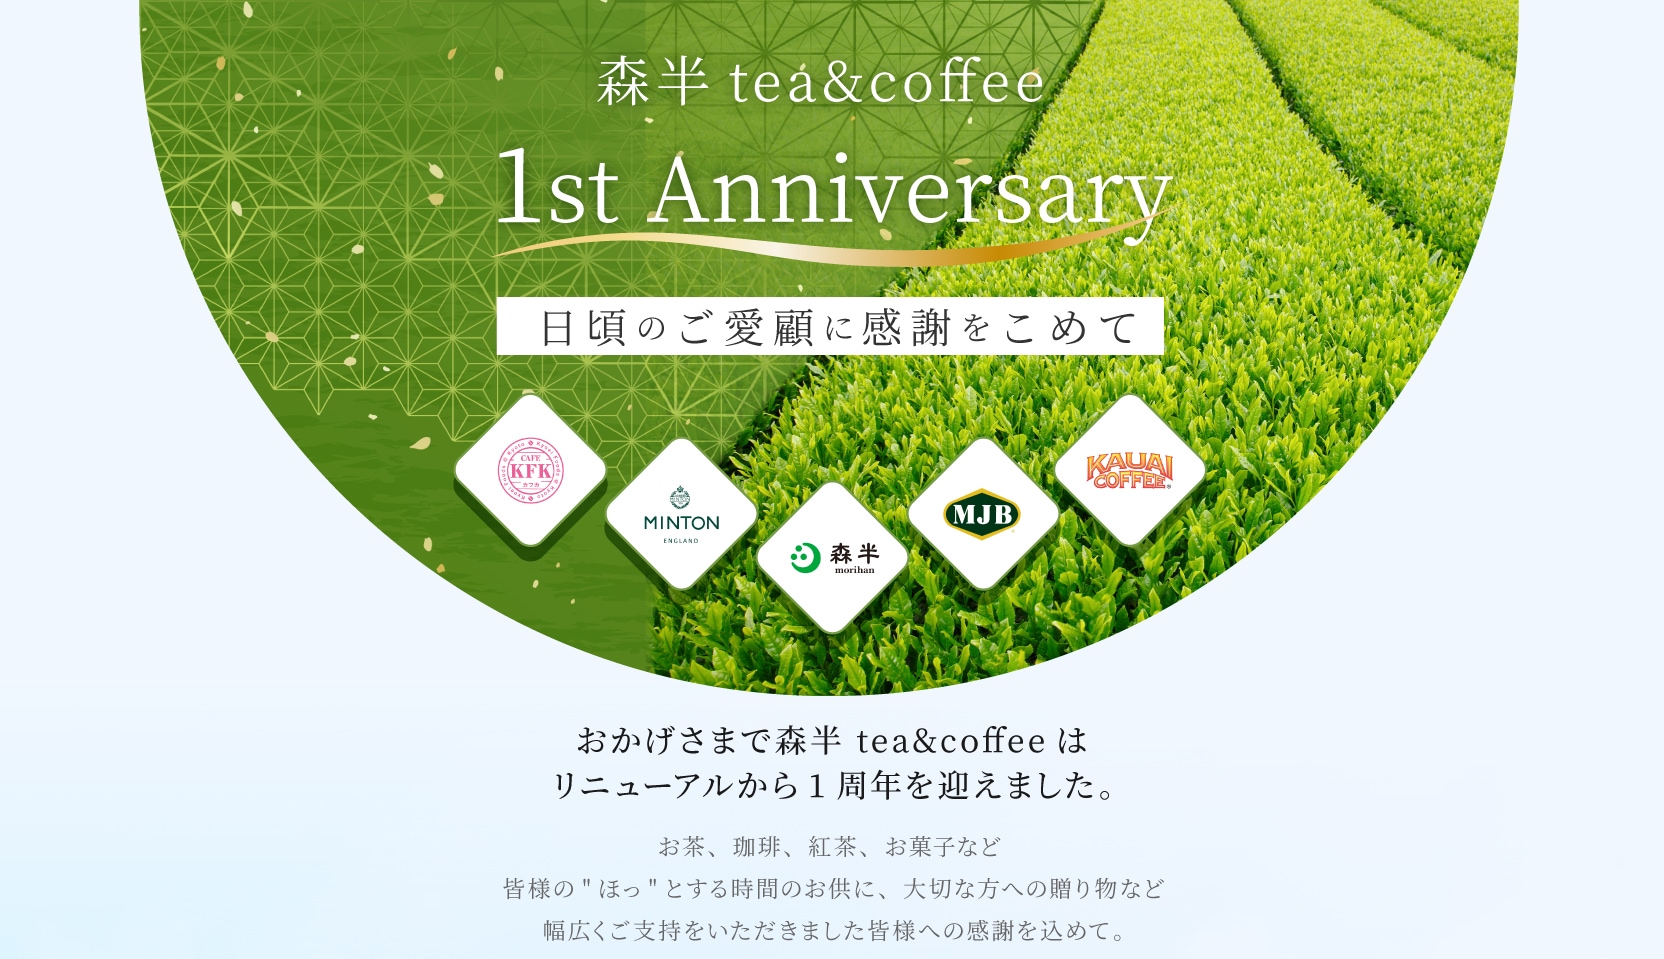 森半tea&coffee 1st Anniversary